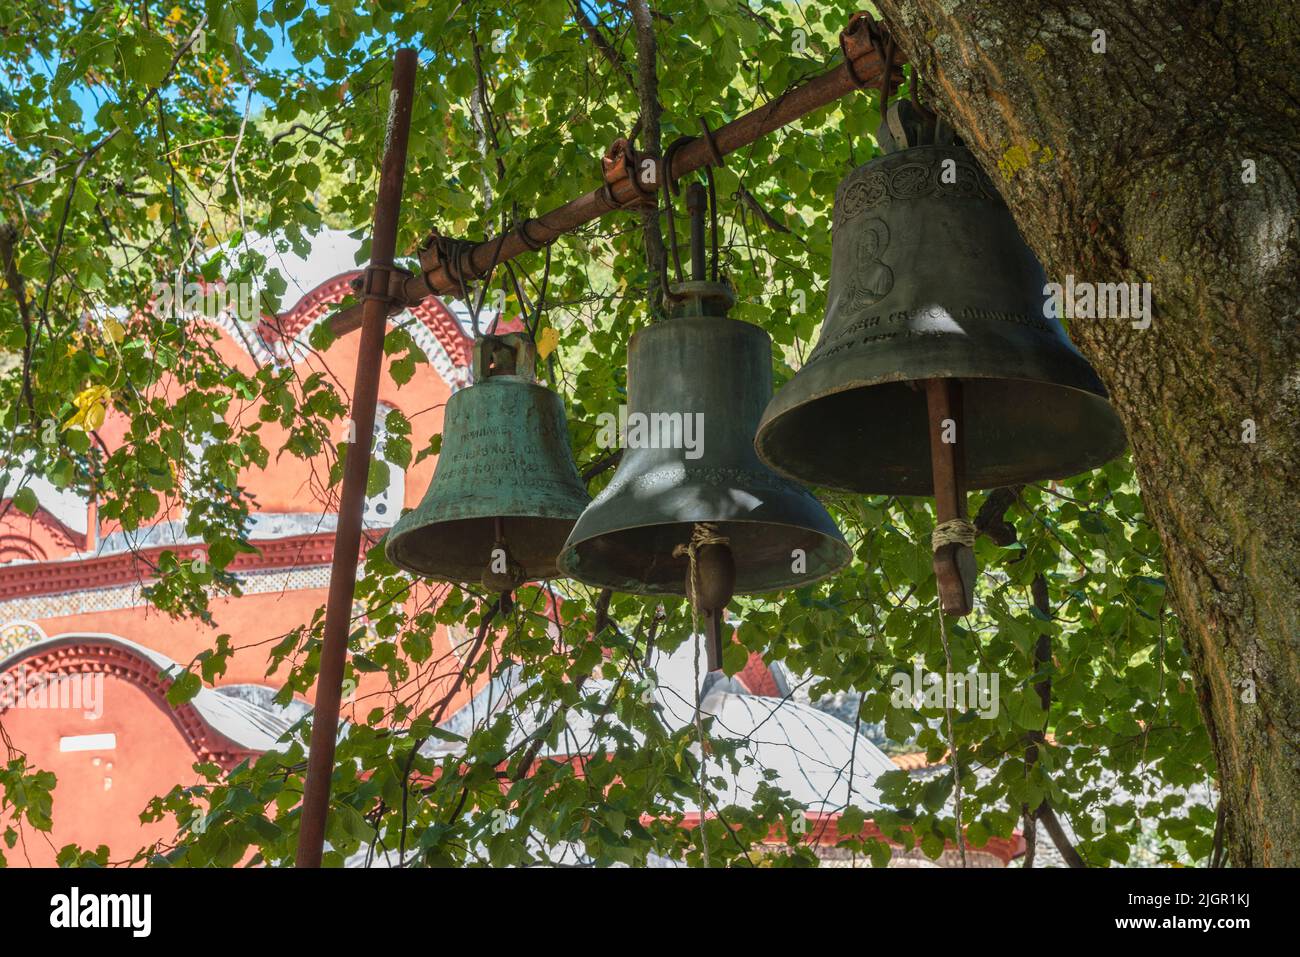 Tres campanas de bronce colgando bajo un árbol fuera del monasterio medieval ortodoxo serbio Patriarcado de Peć en Kosovo. Foto de stock